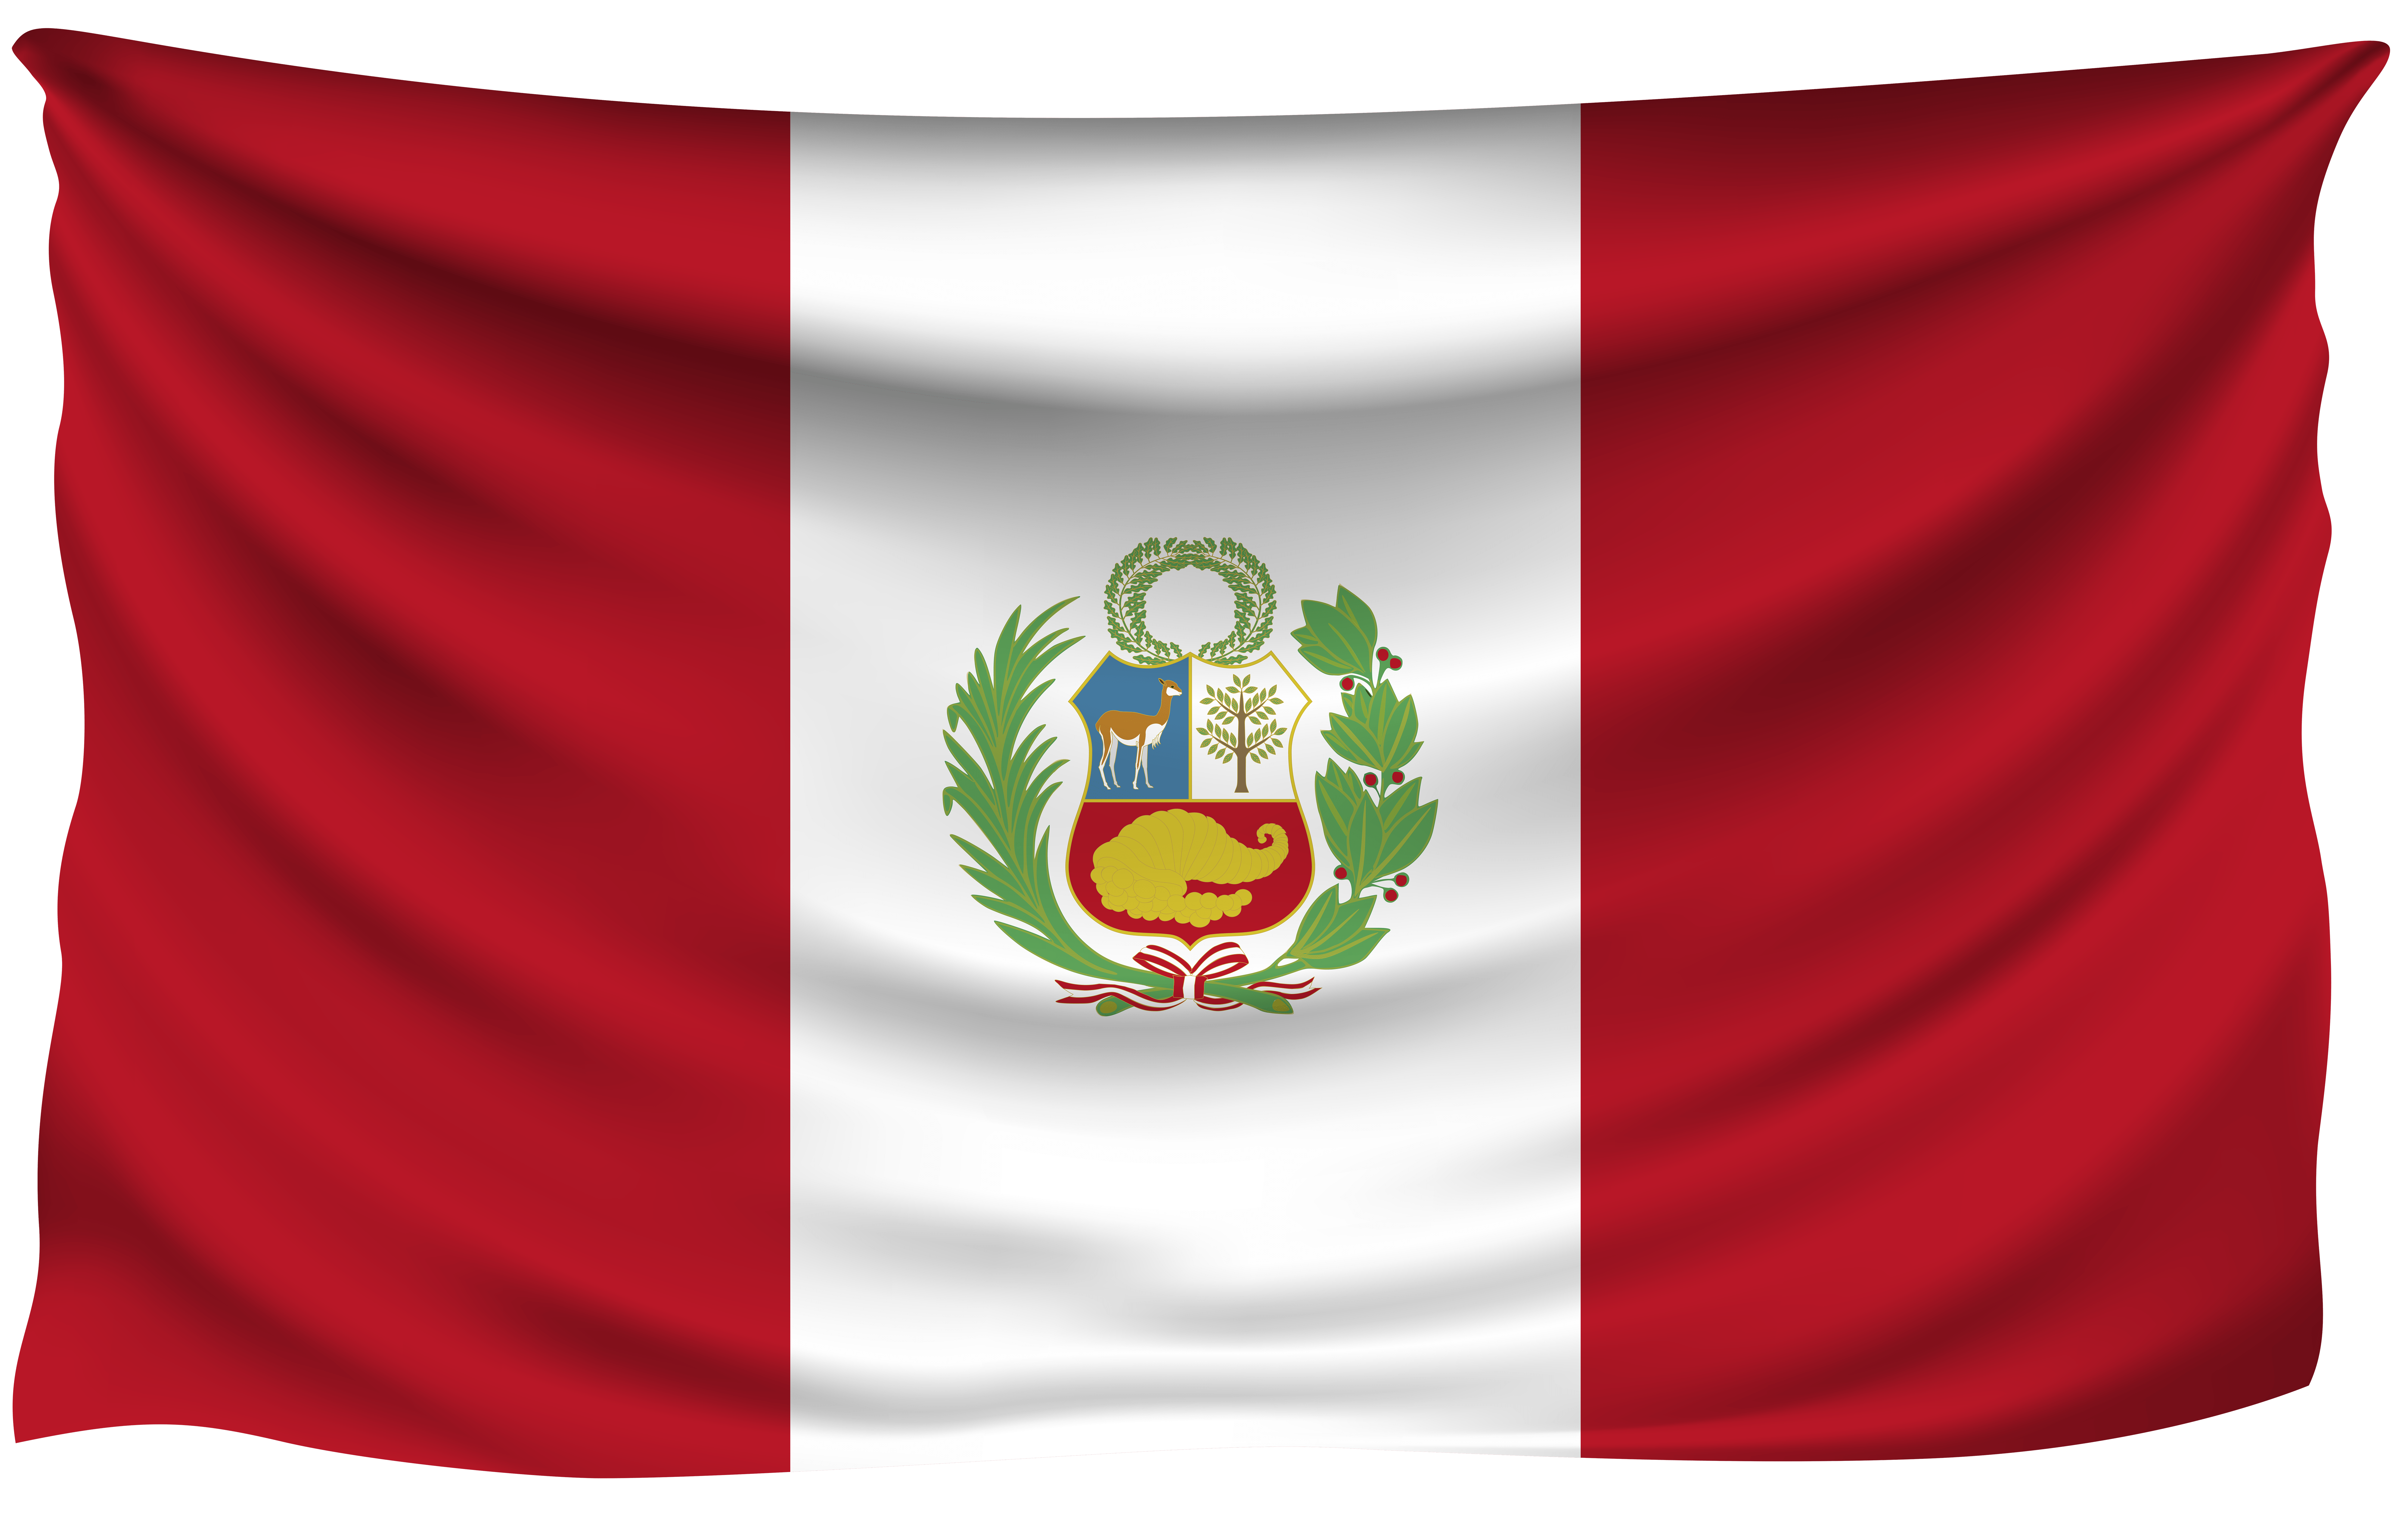 Dibujo De La Bandera Del Peru Urema Nacor